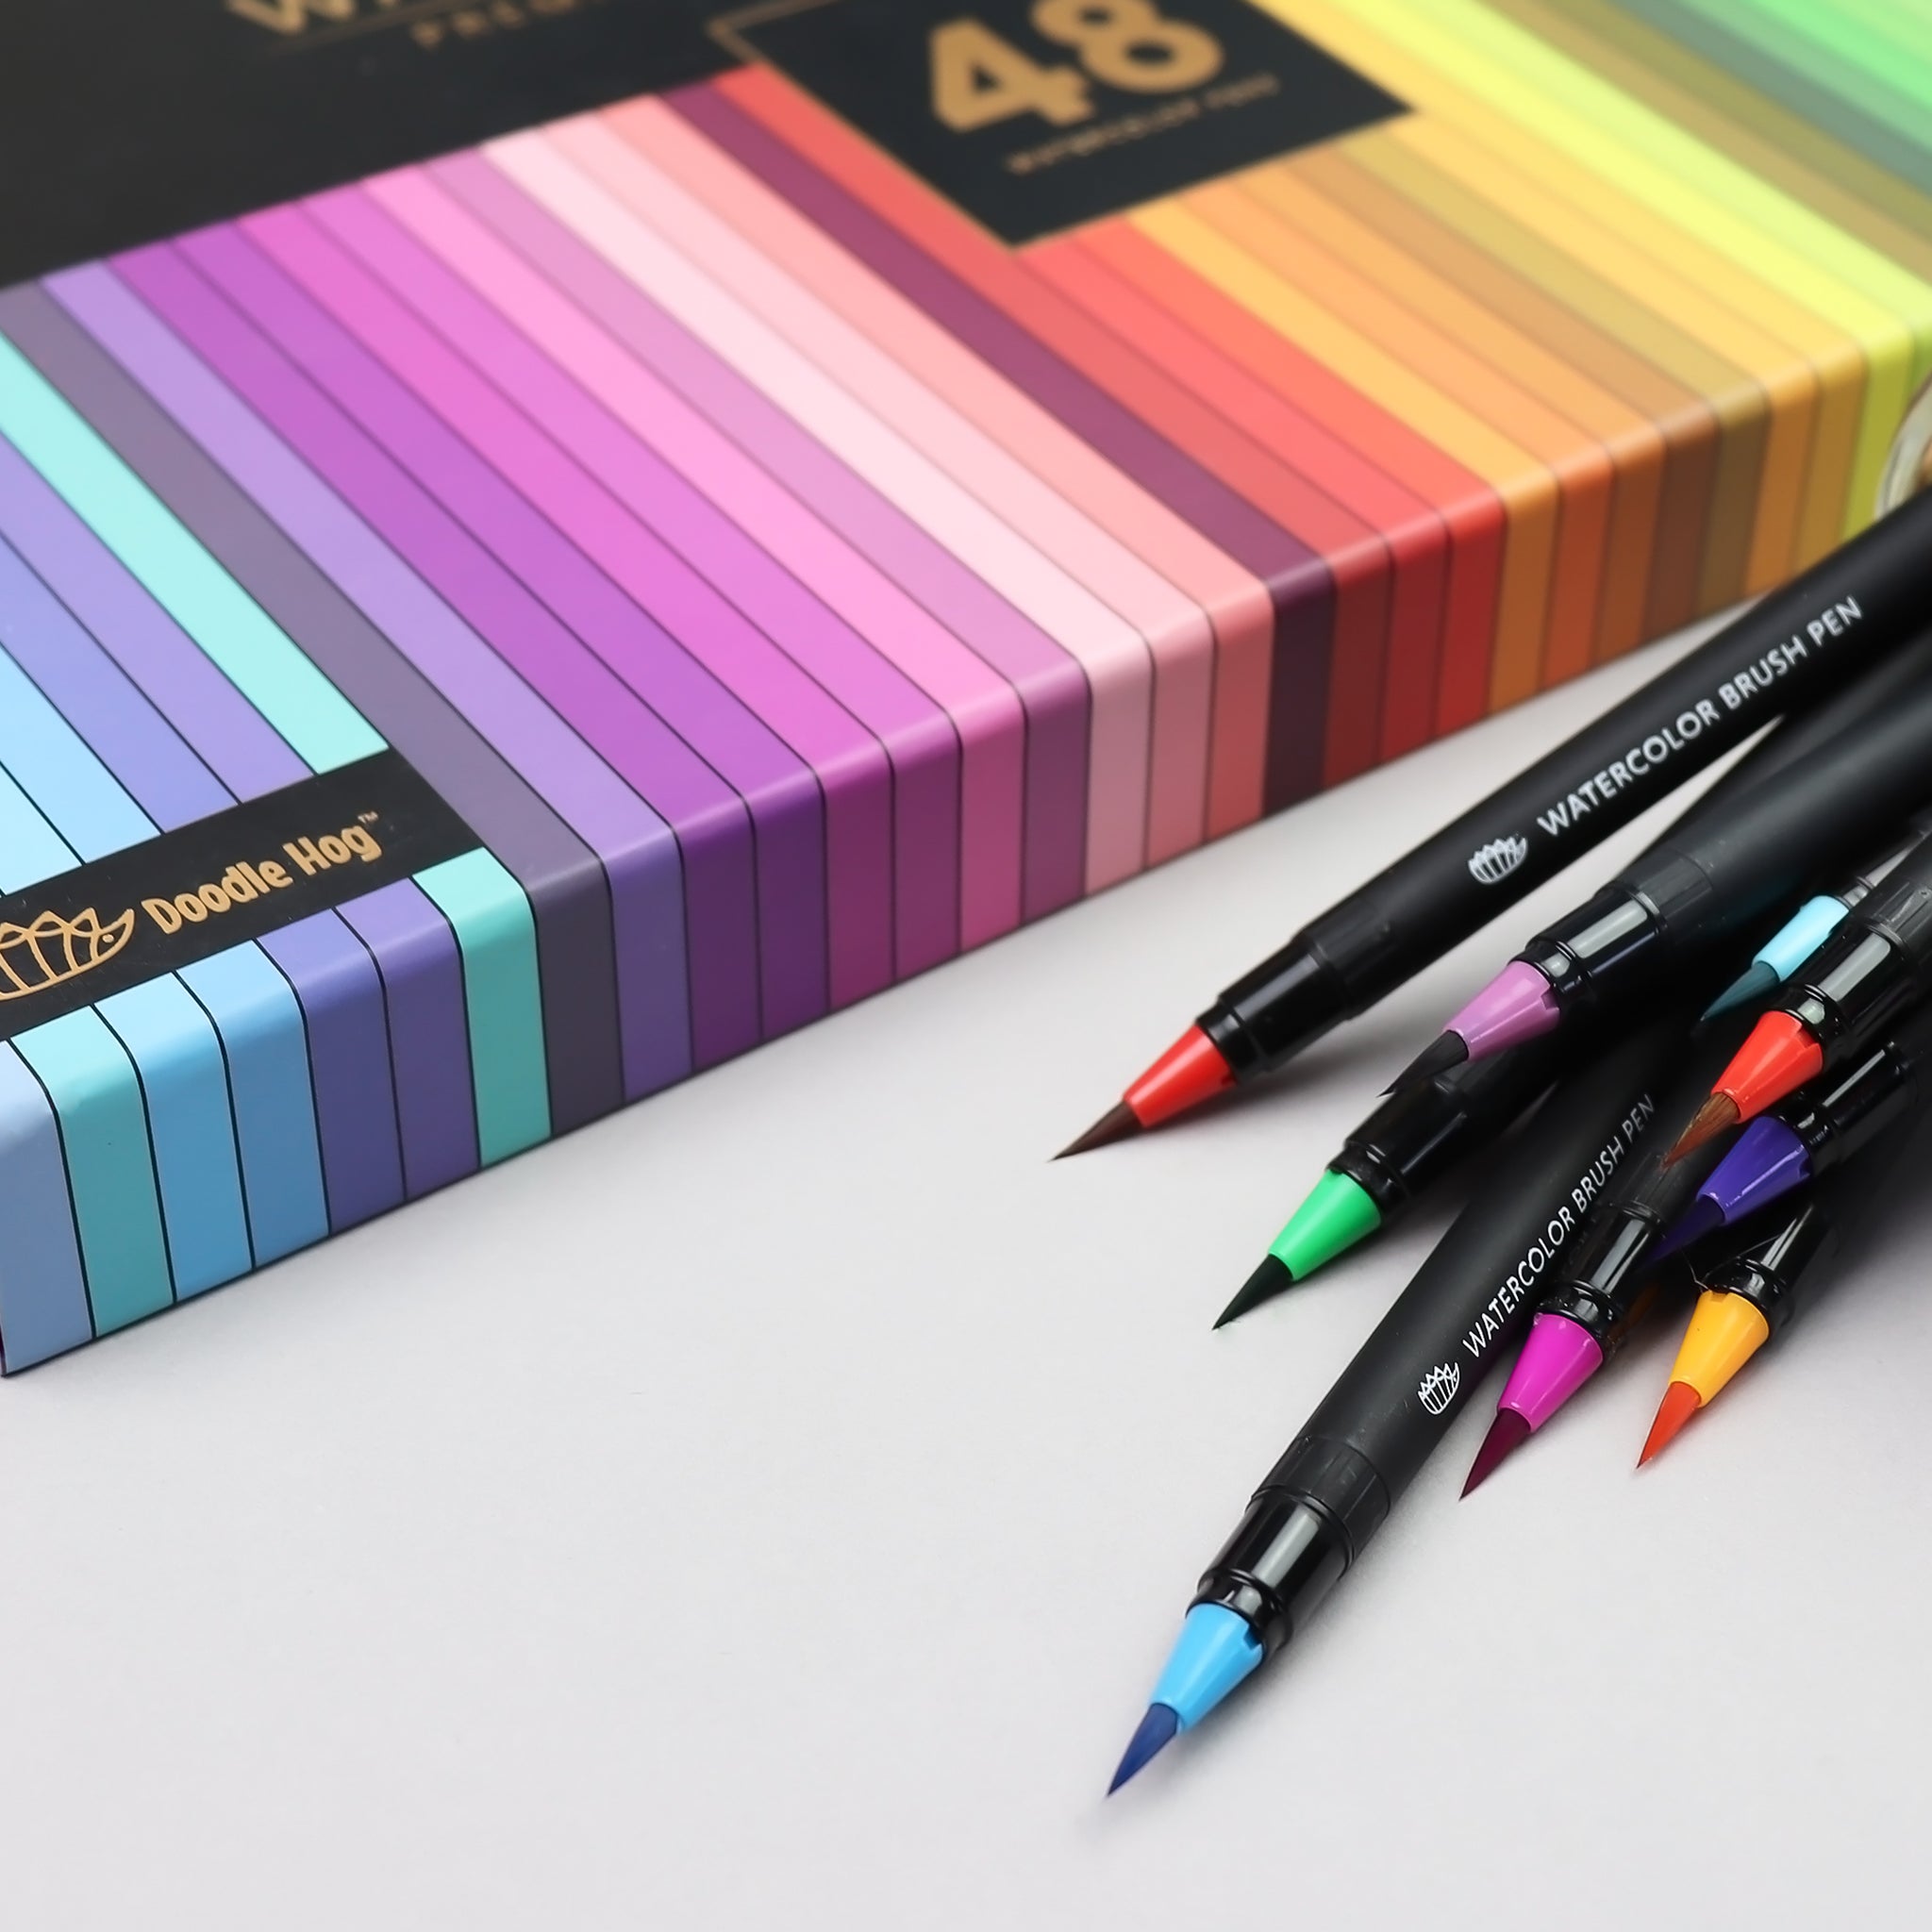 48 Premium Watercolor Brush Pens for Beginner to Professional